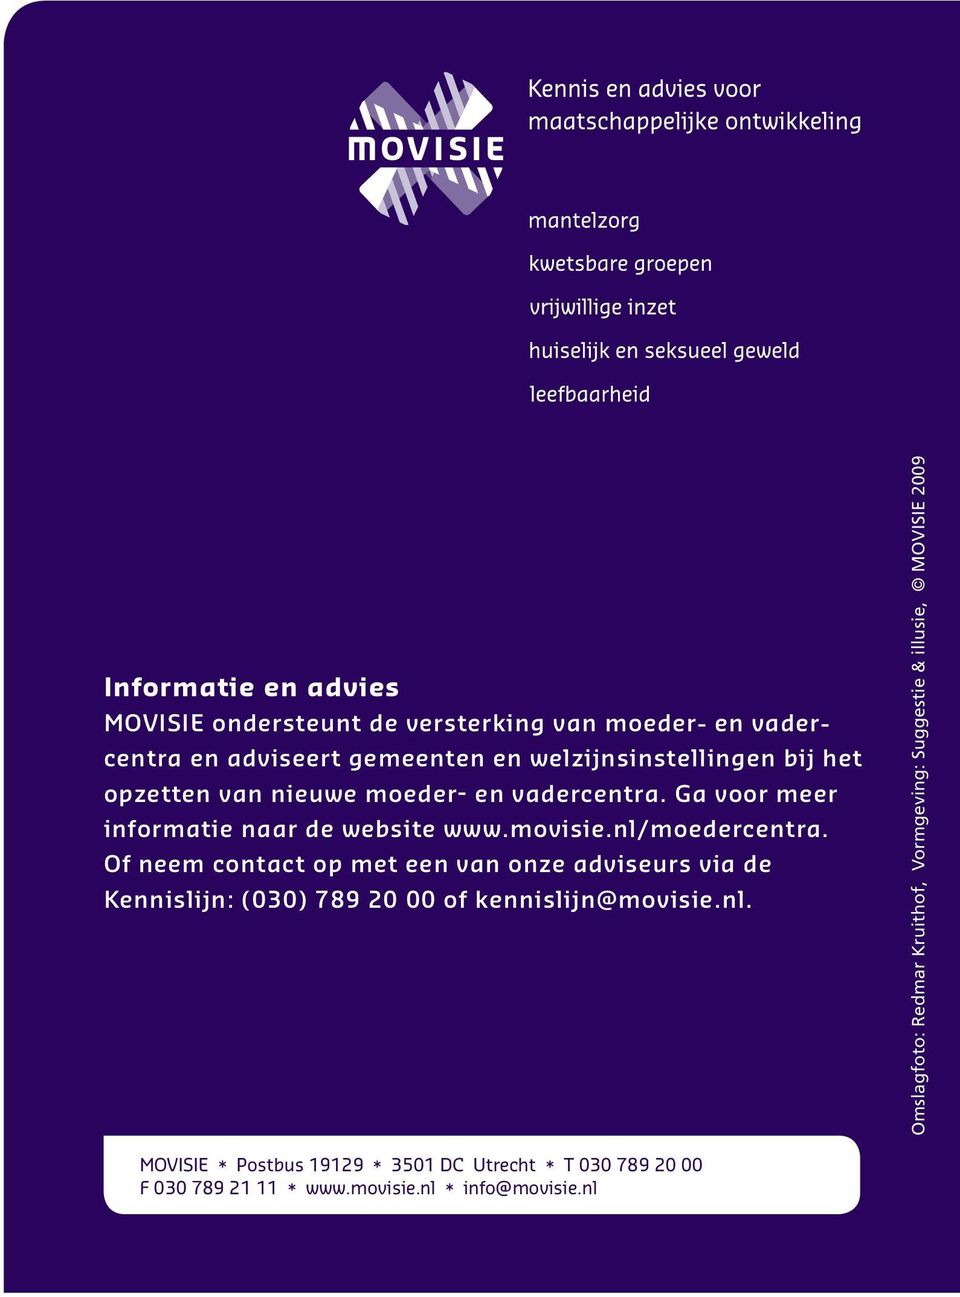 Of neem contact op met een van onze adviseurs via de Kennislijn: (030) 789 20 00 of kennislijn@movisie.nl.